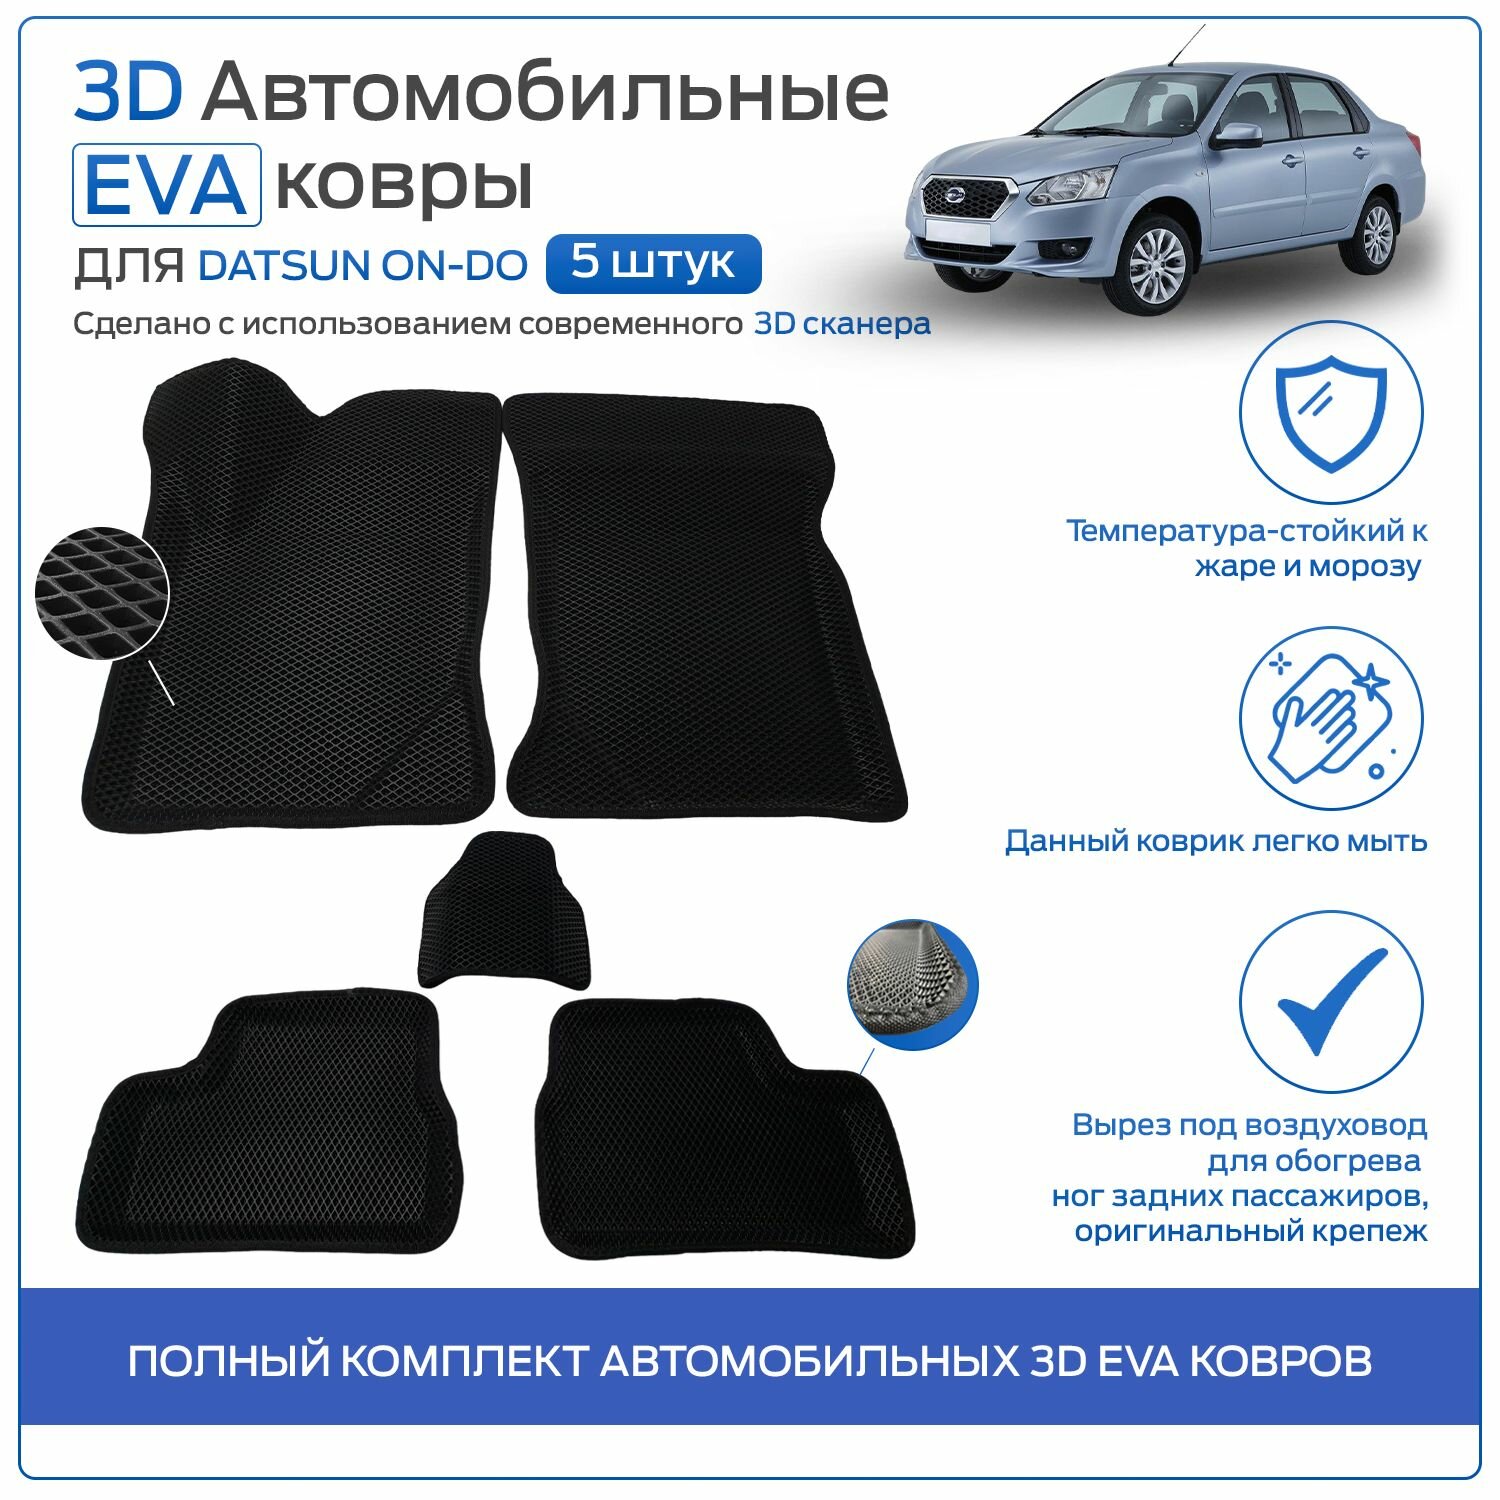 Полный комплект автомобильных 3D EVA ковров с бортом для Датсун Он-ДО / Datsun On-DO